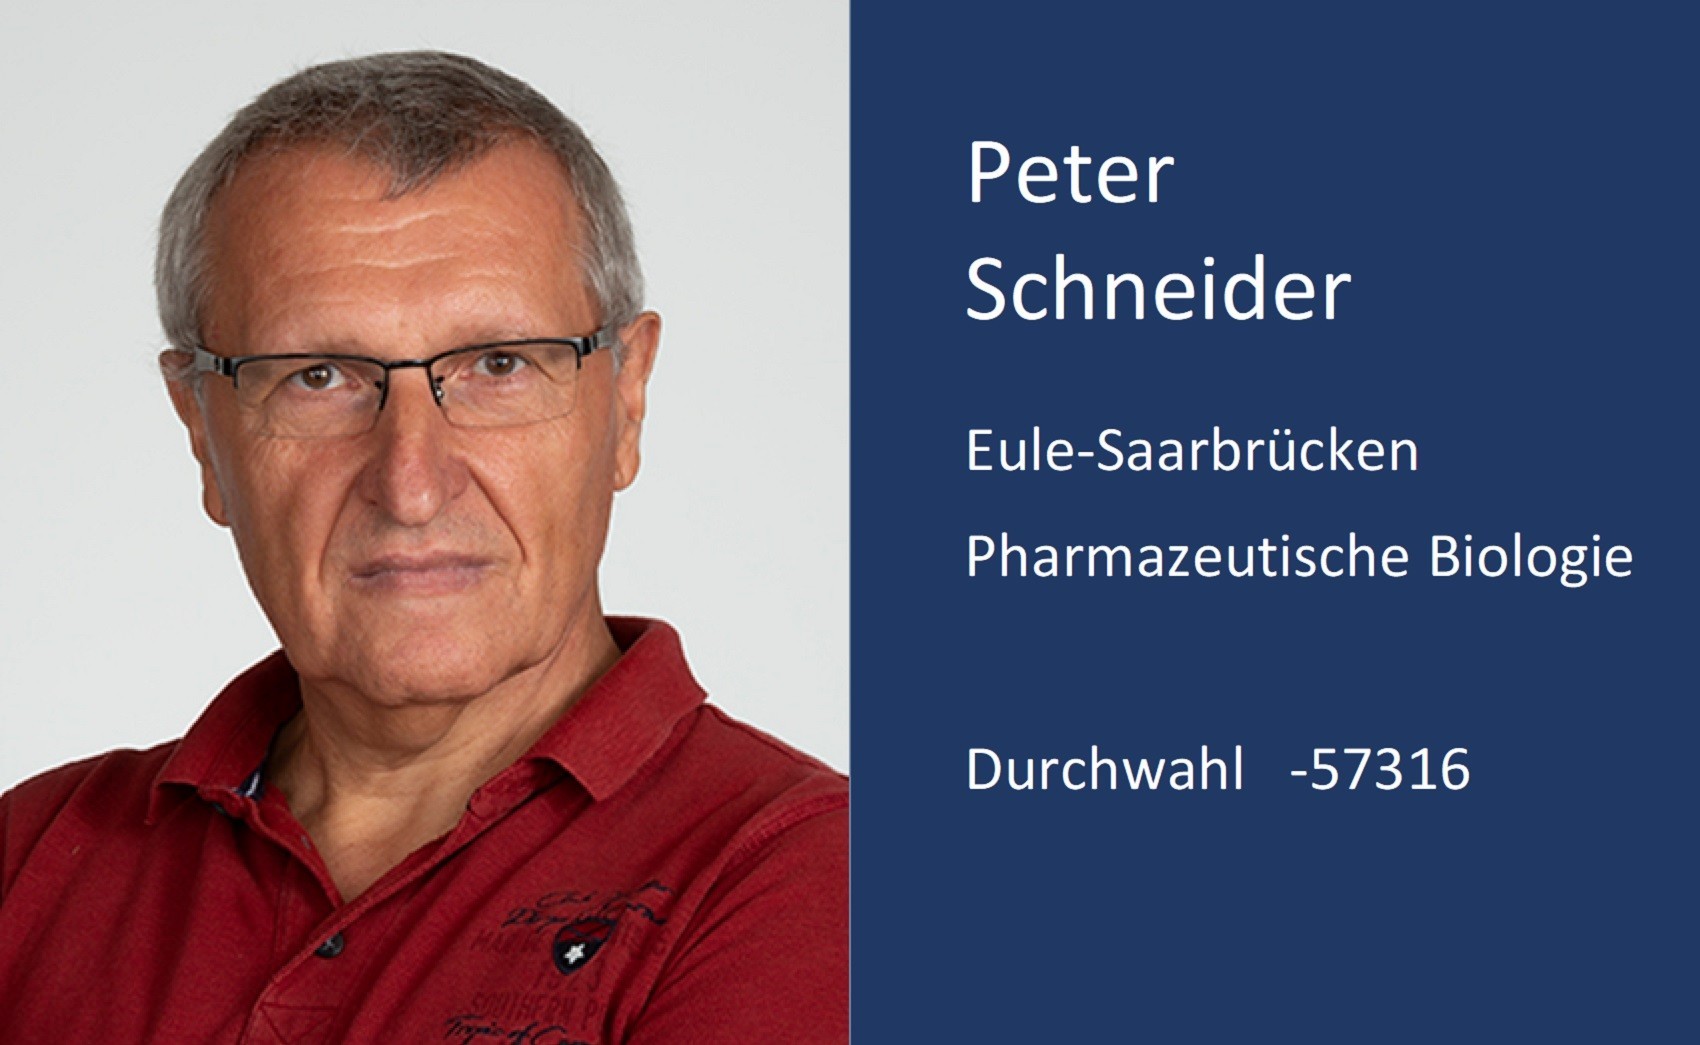 Peter Schneider, Kontaktdaten, Durchwahl, 5 7 3 1 6, Email, p e . schneider ät m x . uni minus saarland . d e